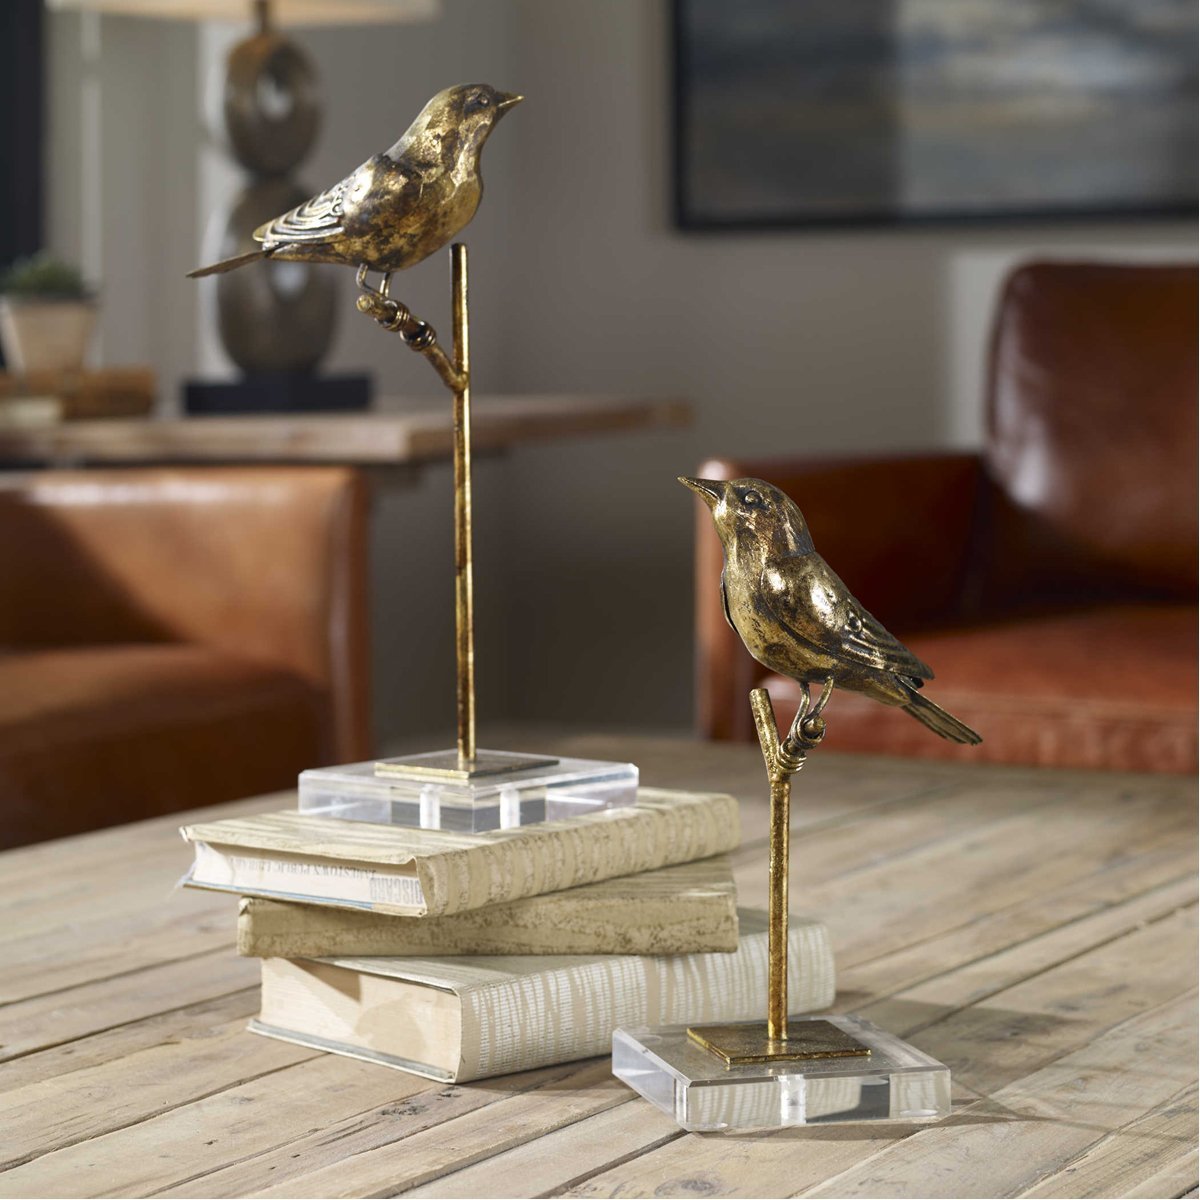 Uttermost Passerines Bird Sculptures, 2-Piece Set